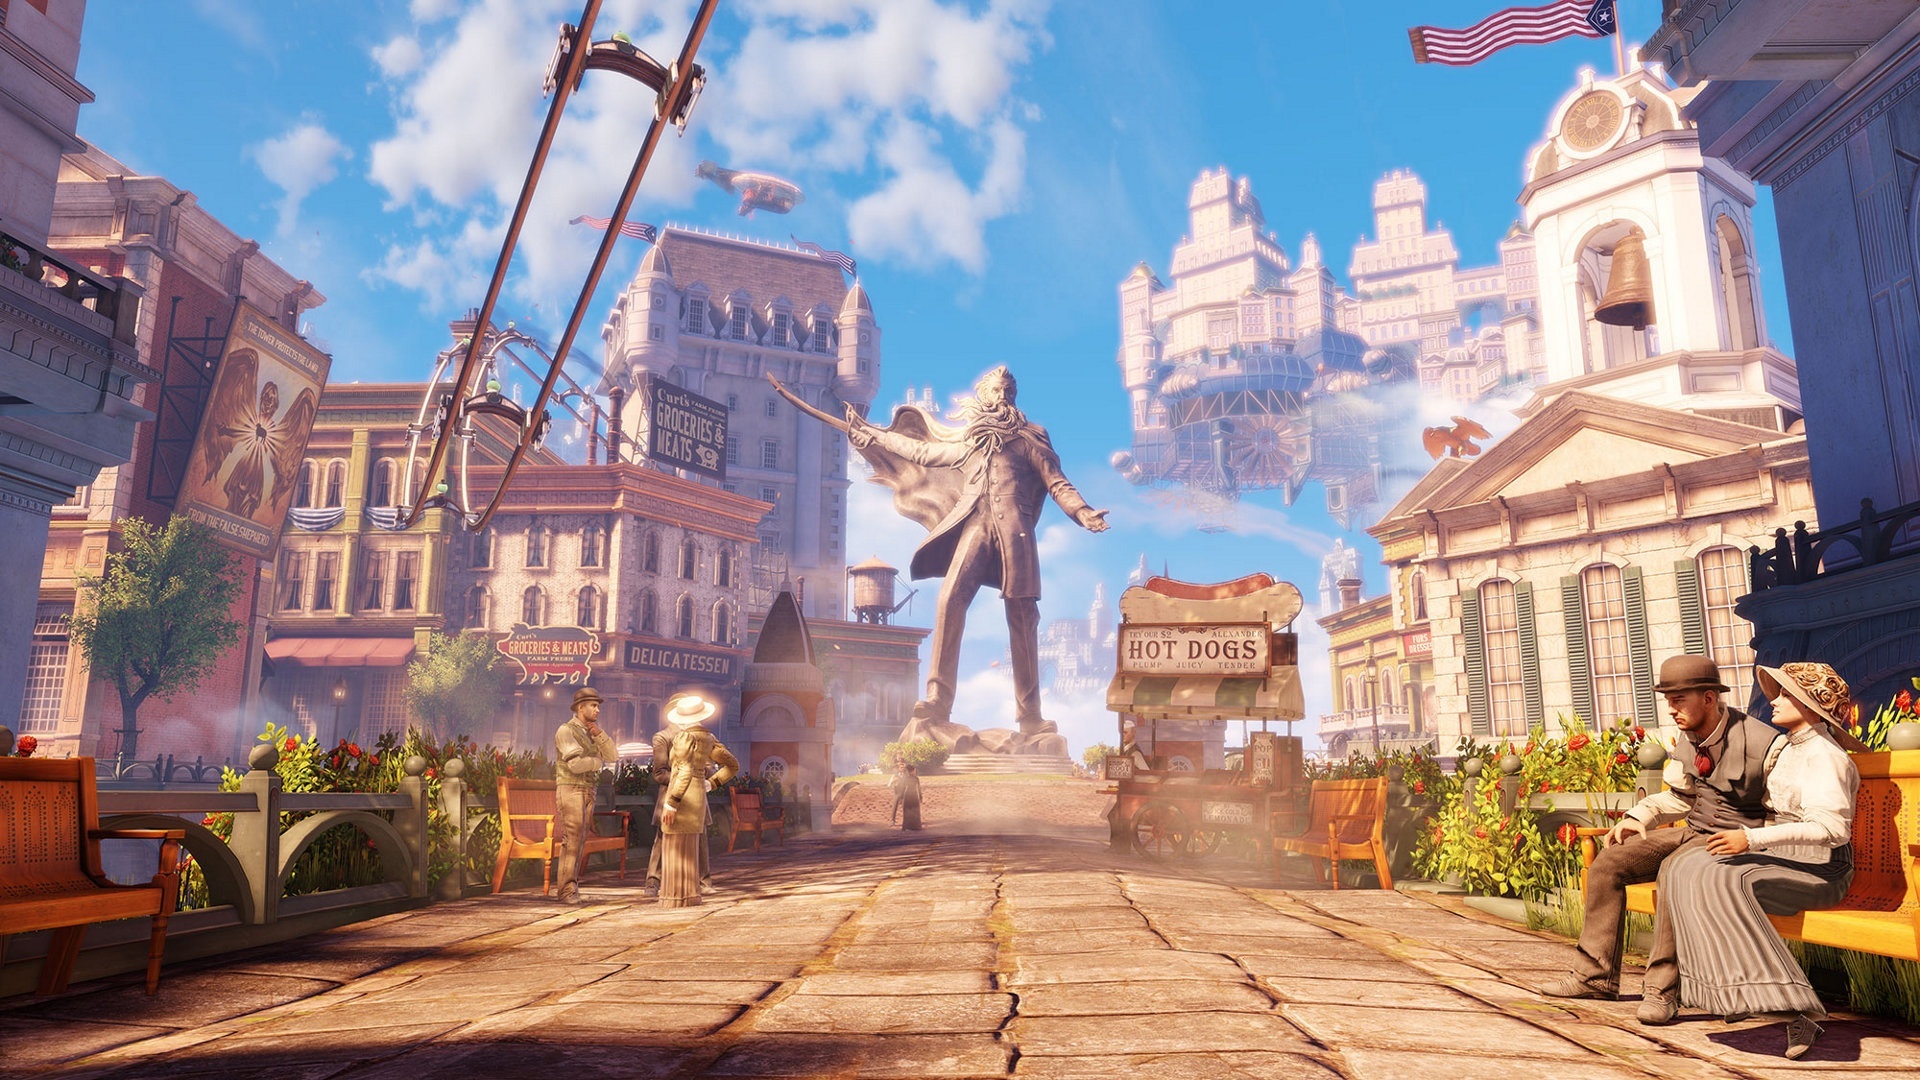 2K Games Bioshock InfiniteDesigner kehrt zurück, neues Projekt